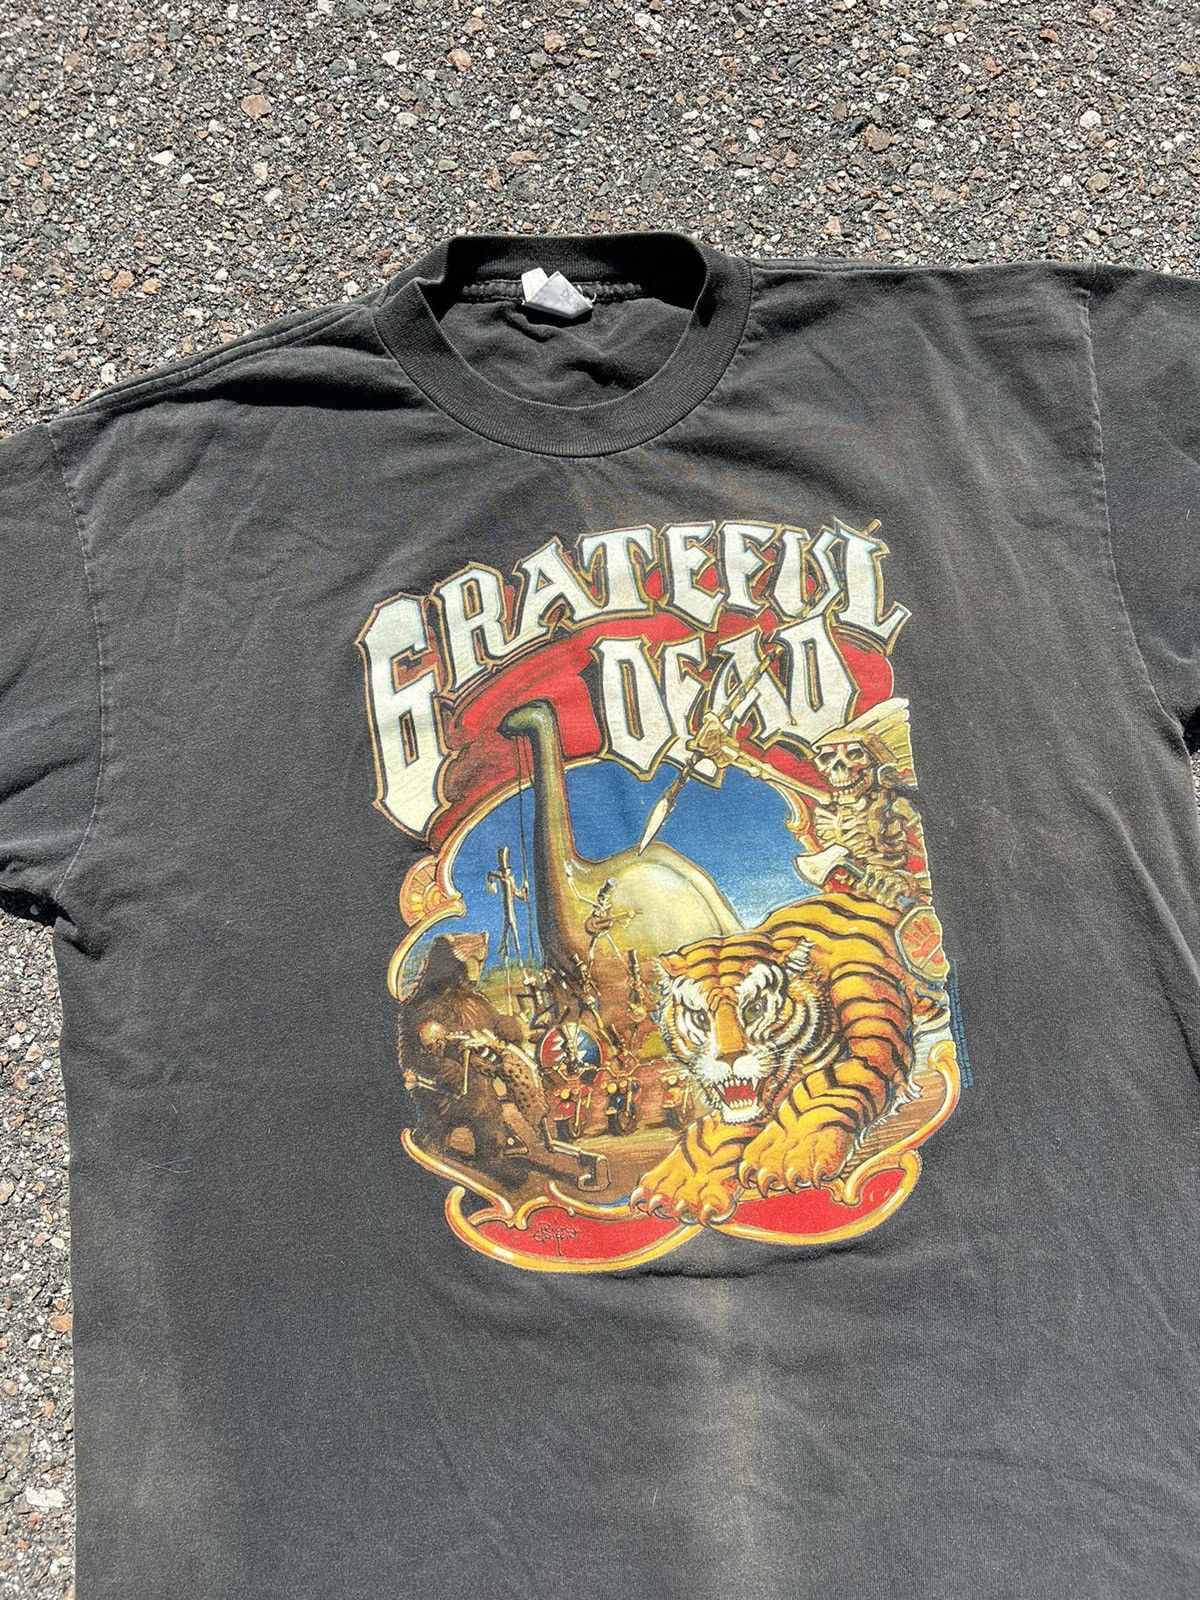 Vintage Vintage Grateful Dead 1996 Circus Cronies T-shirt XL Size US XL / EU 56 / 4 - 2 Preview